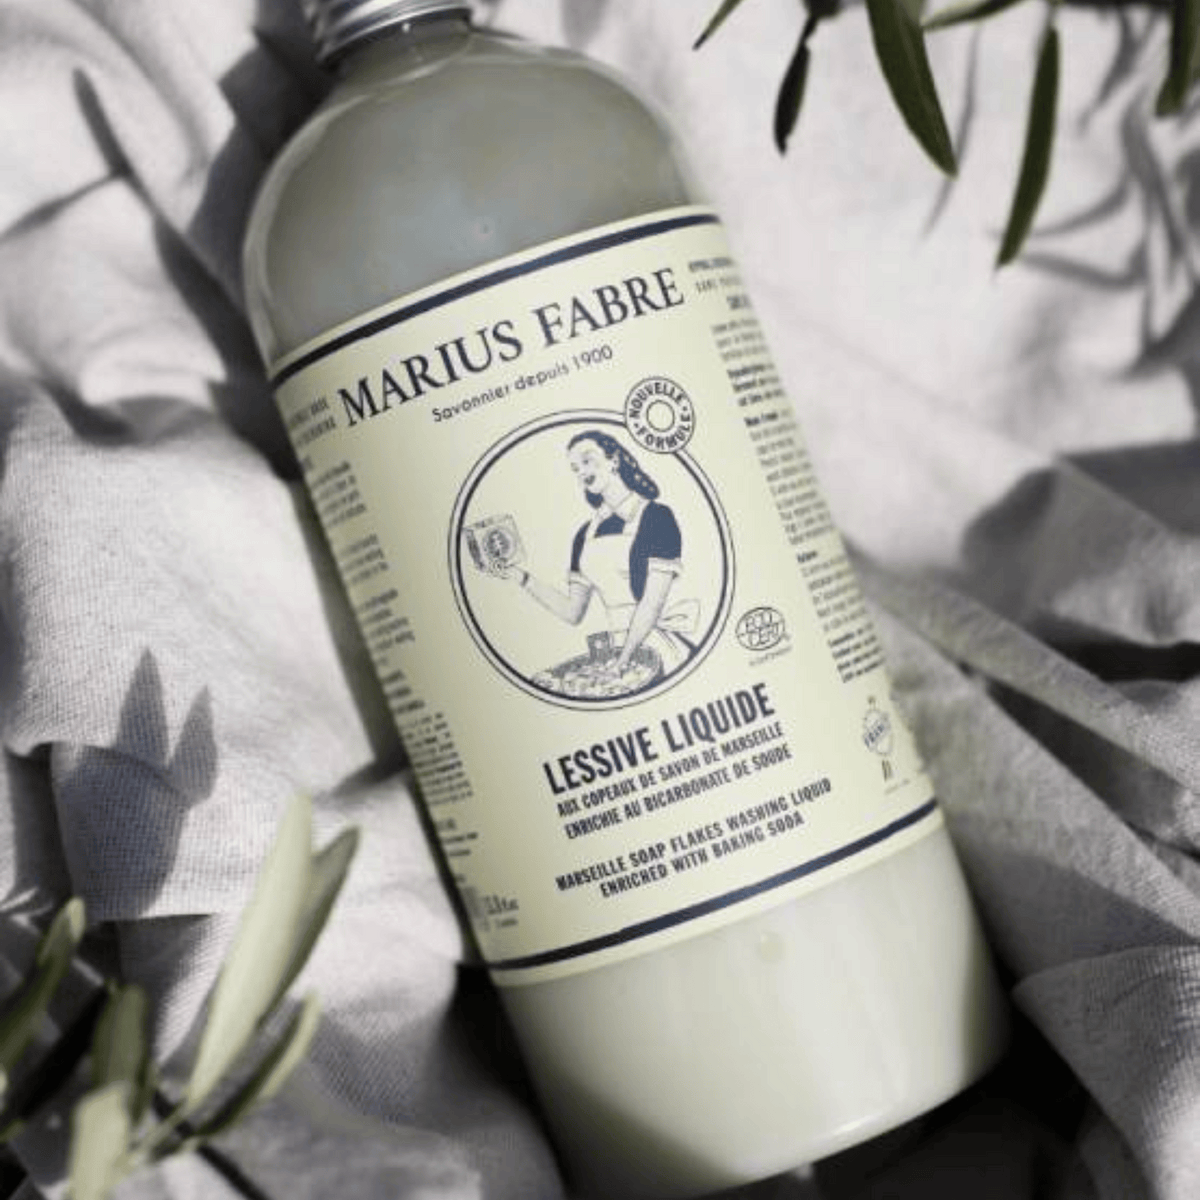 Marius Fabre Marseille Liquid Laundry Soap with Bicarbonate of Soda (1 L) #10086599